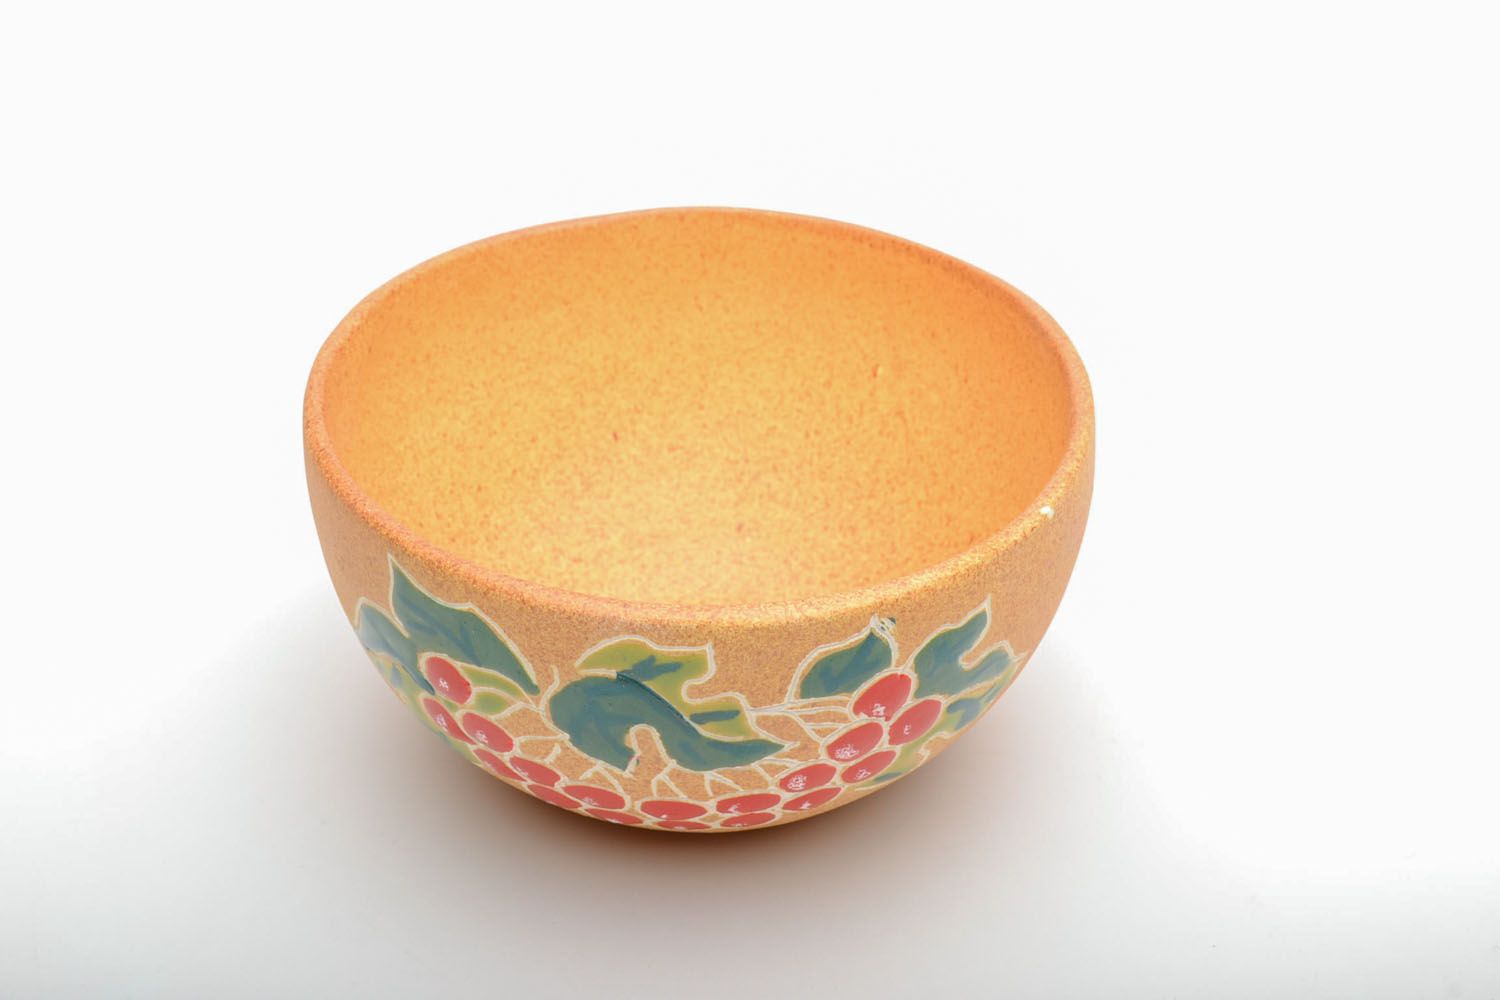 Homemade ceramic bowl photo 2